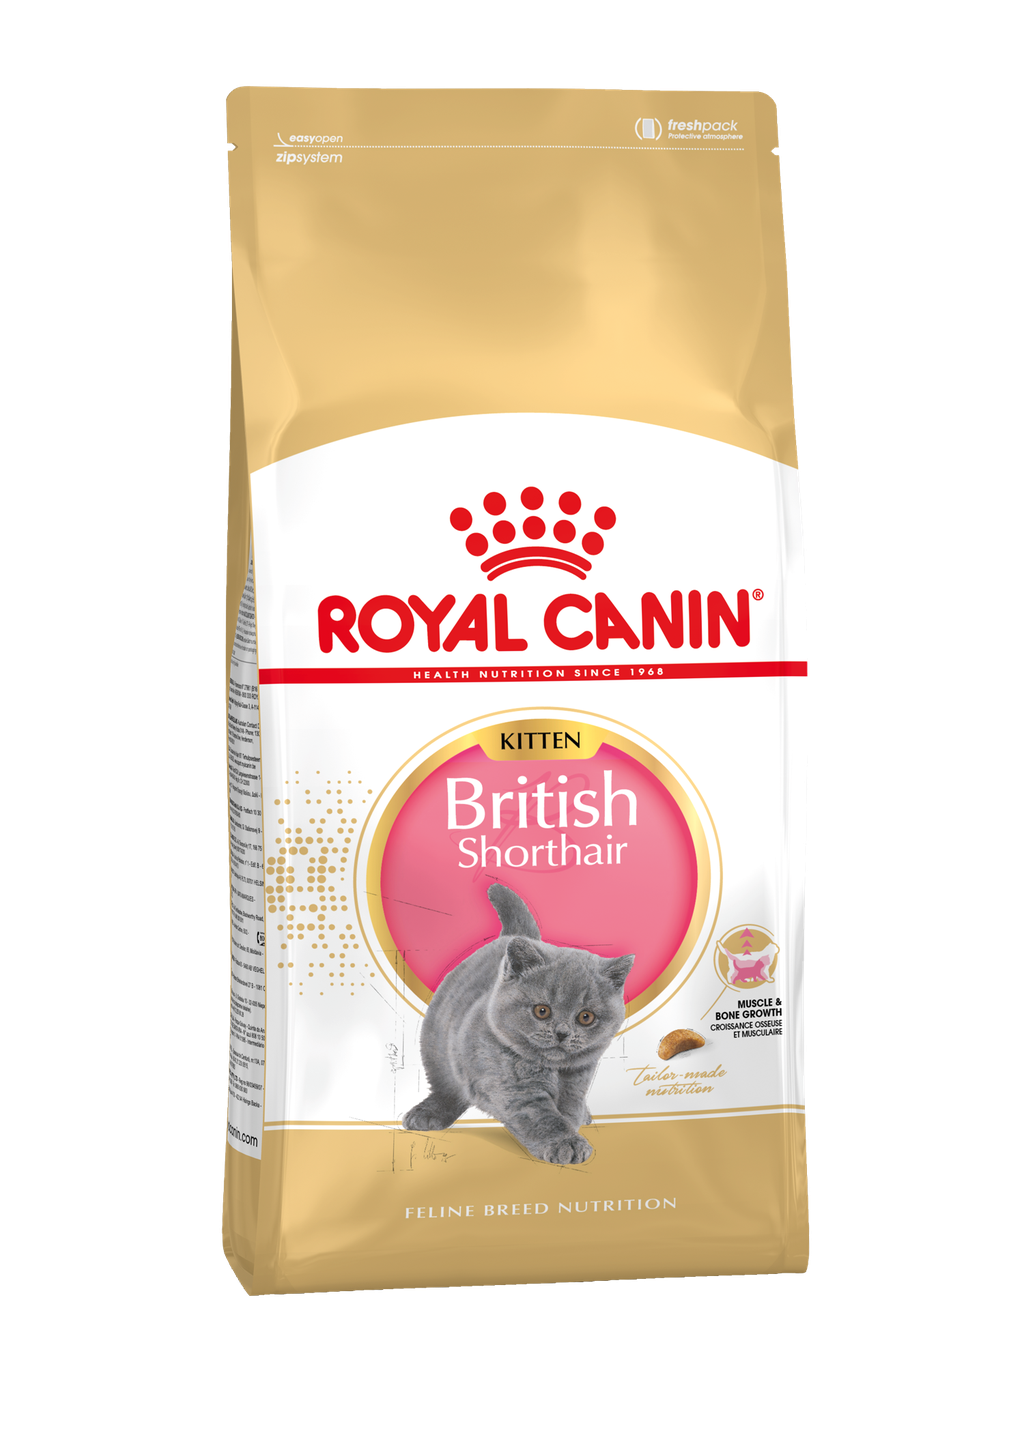 British Shorthair Kitten: aangepaste voor uw kat - Voeding - ROYAL CANIN©